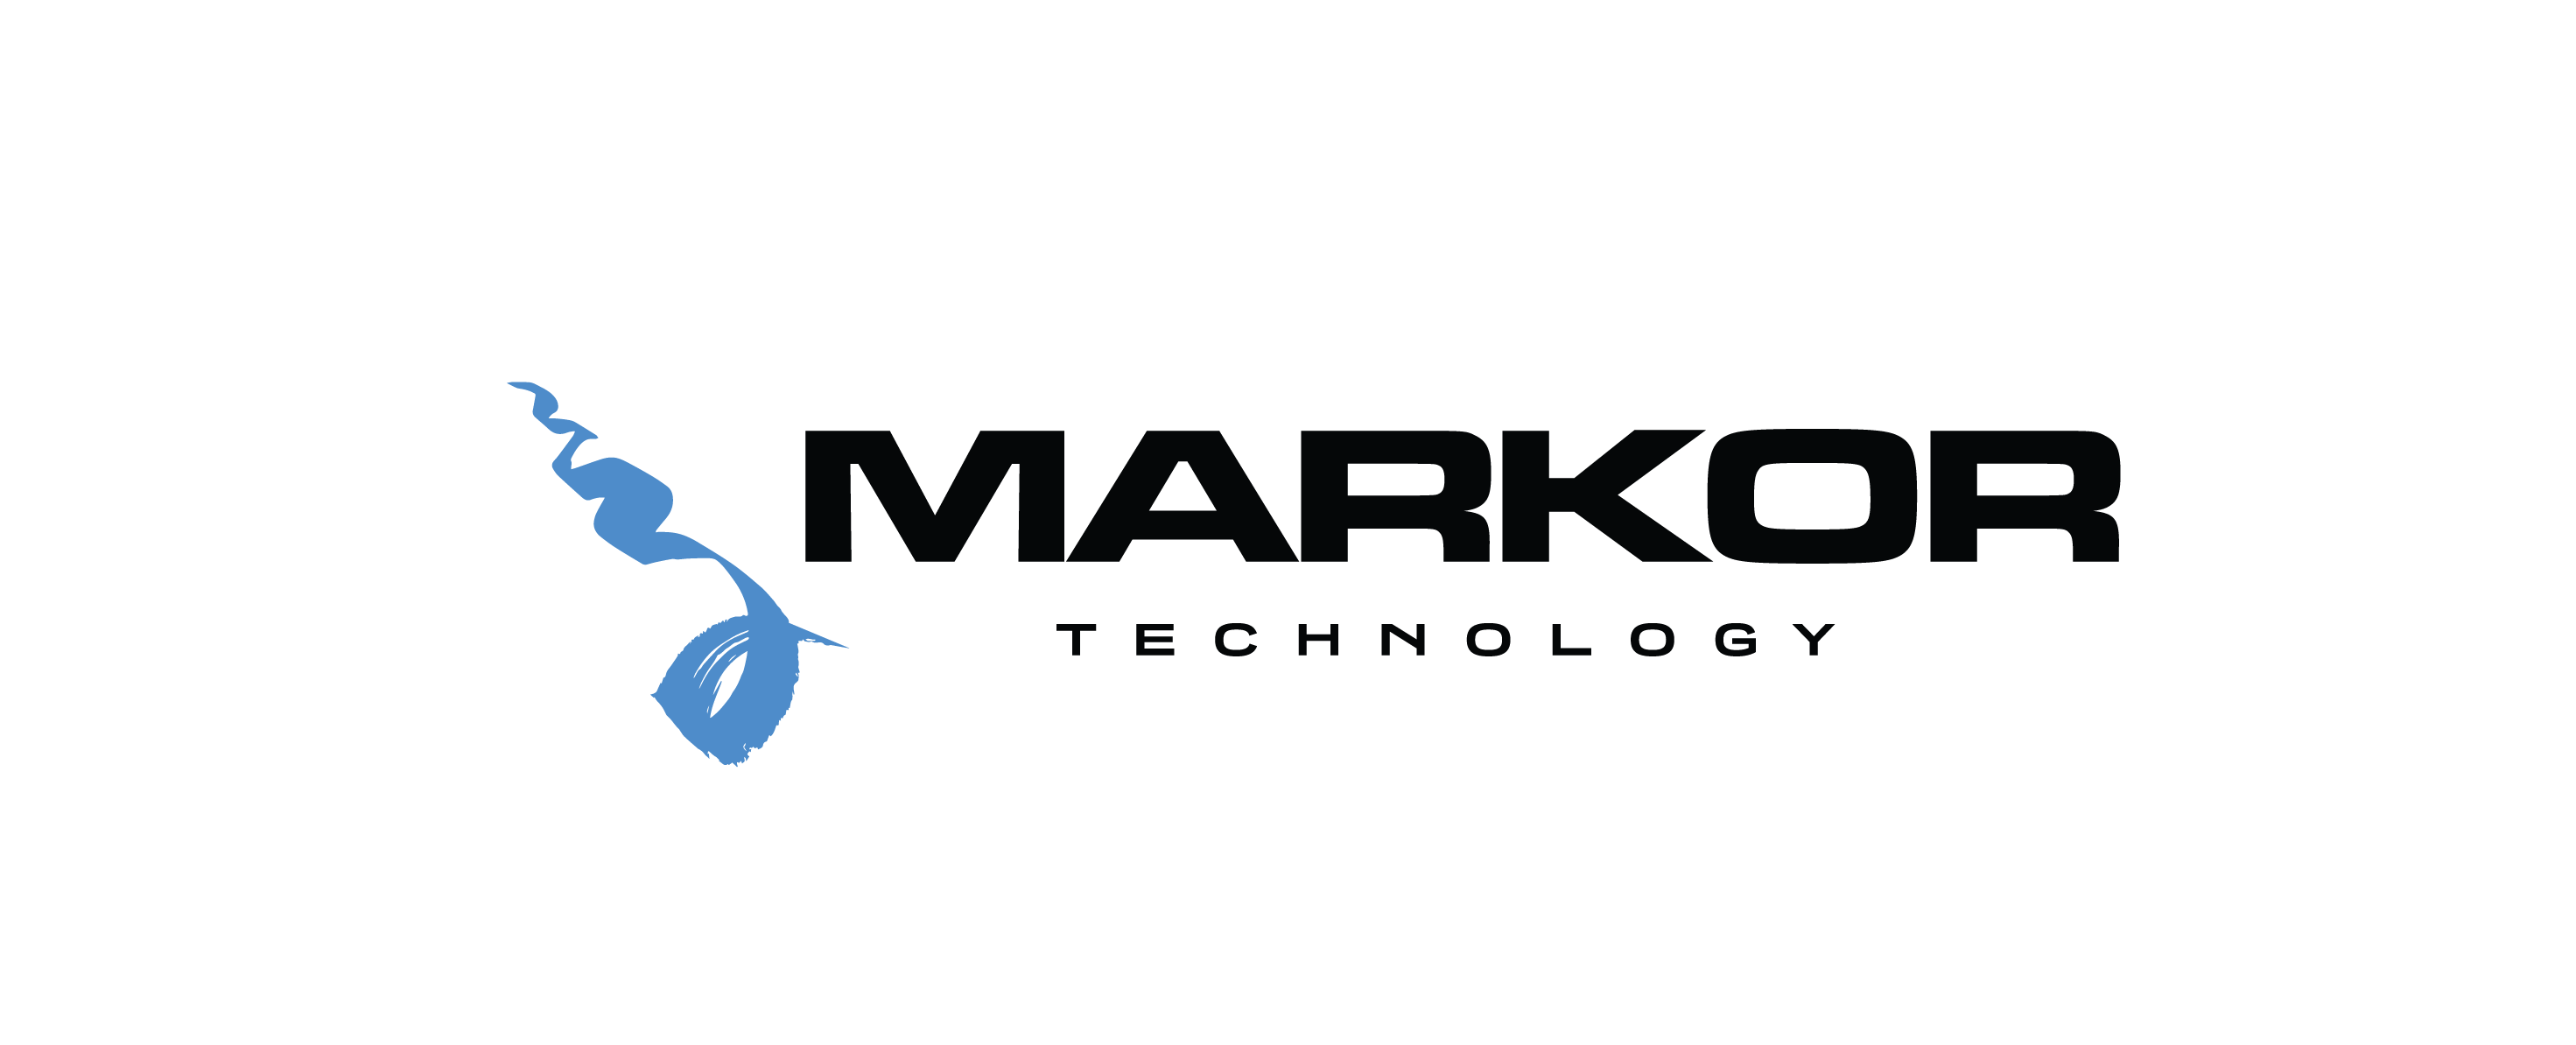 Markor Technology jogos